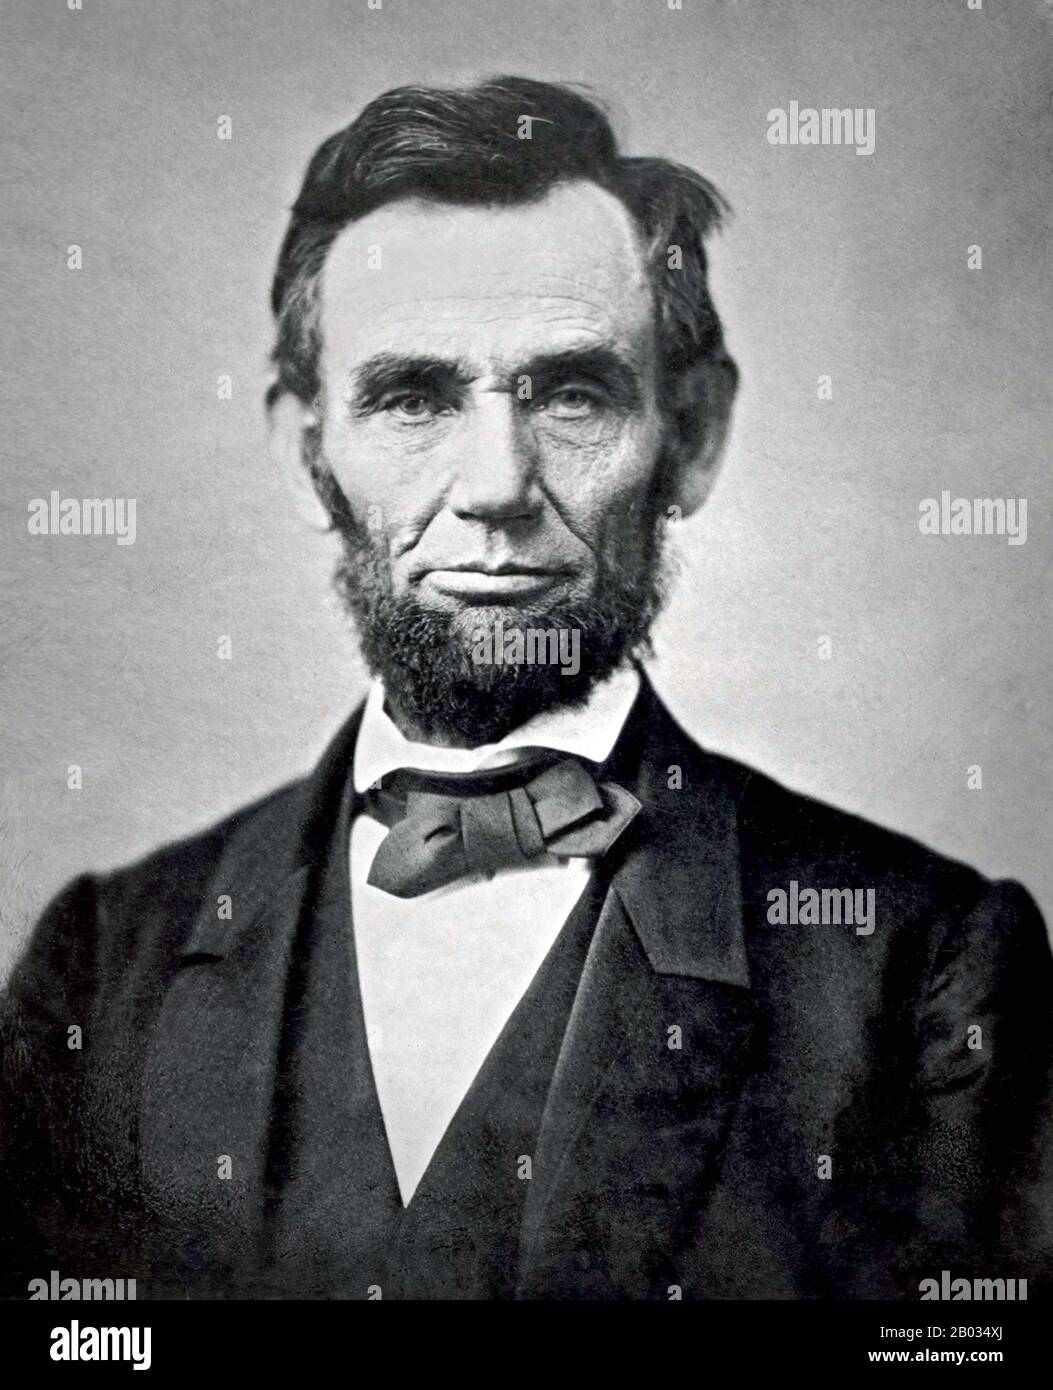 Abraham Lincoln (12 février 1809 – 15 avril 1865) fut le 16 président des États-Unis, servant de mars 1861 à son assassinat en avril 1865. Lincoln a conduit les États-Unis par sa guerre civile, sa guerre la plus sanglante et sa plus grande crise morale, constitutionnelle et politique. Ce faisant, il a préservé l'Union, aboli l'esclavage, renforcé le gouvernement fédéral et modernisé l'économie. Banque D'Images